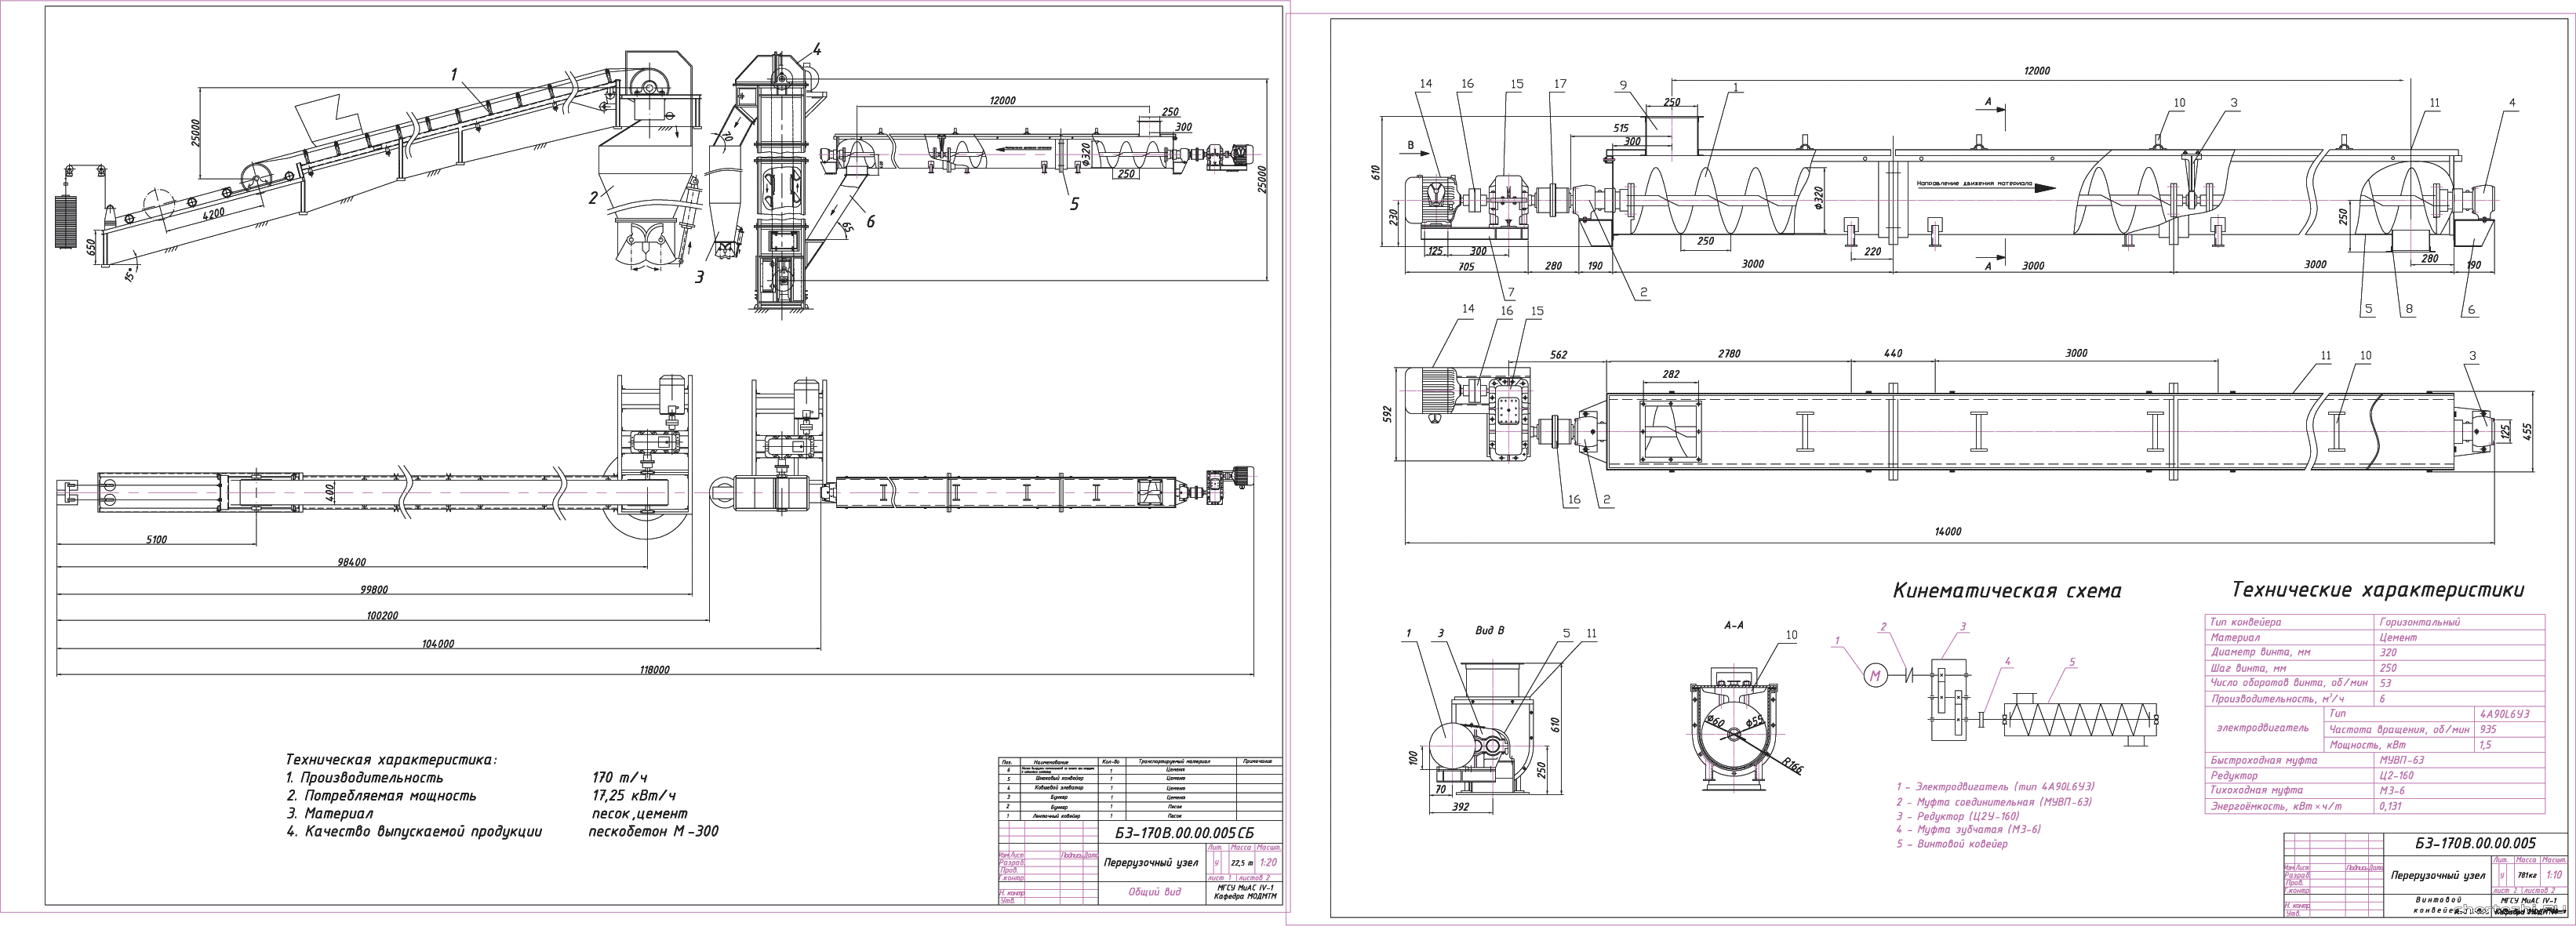 Курсовой проект - Проектирование горизонтального винтового конвейера протяженностью 12 м